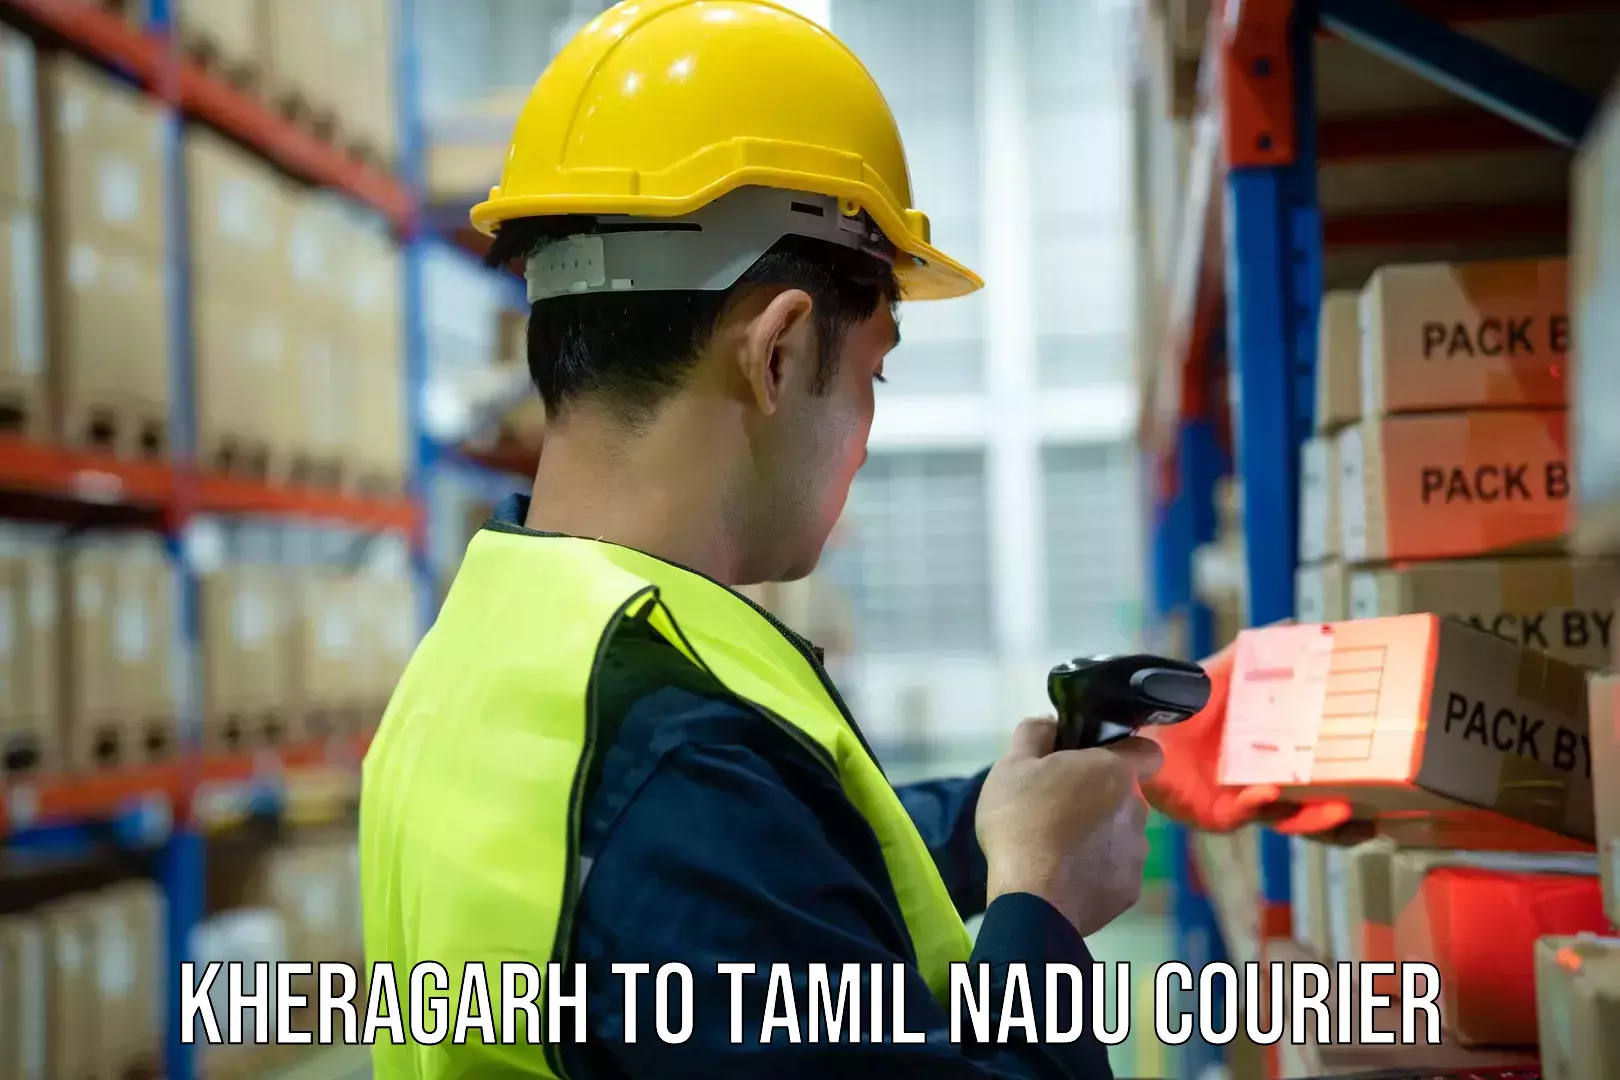 Door-to-door shipment in Kheragarh to Tamil Nadu